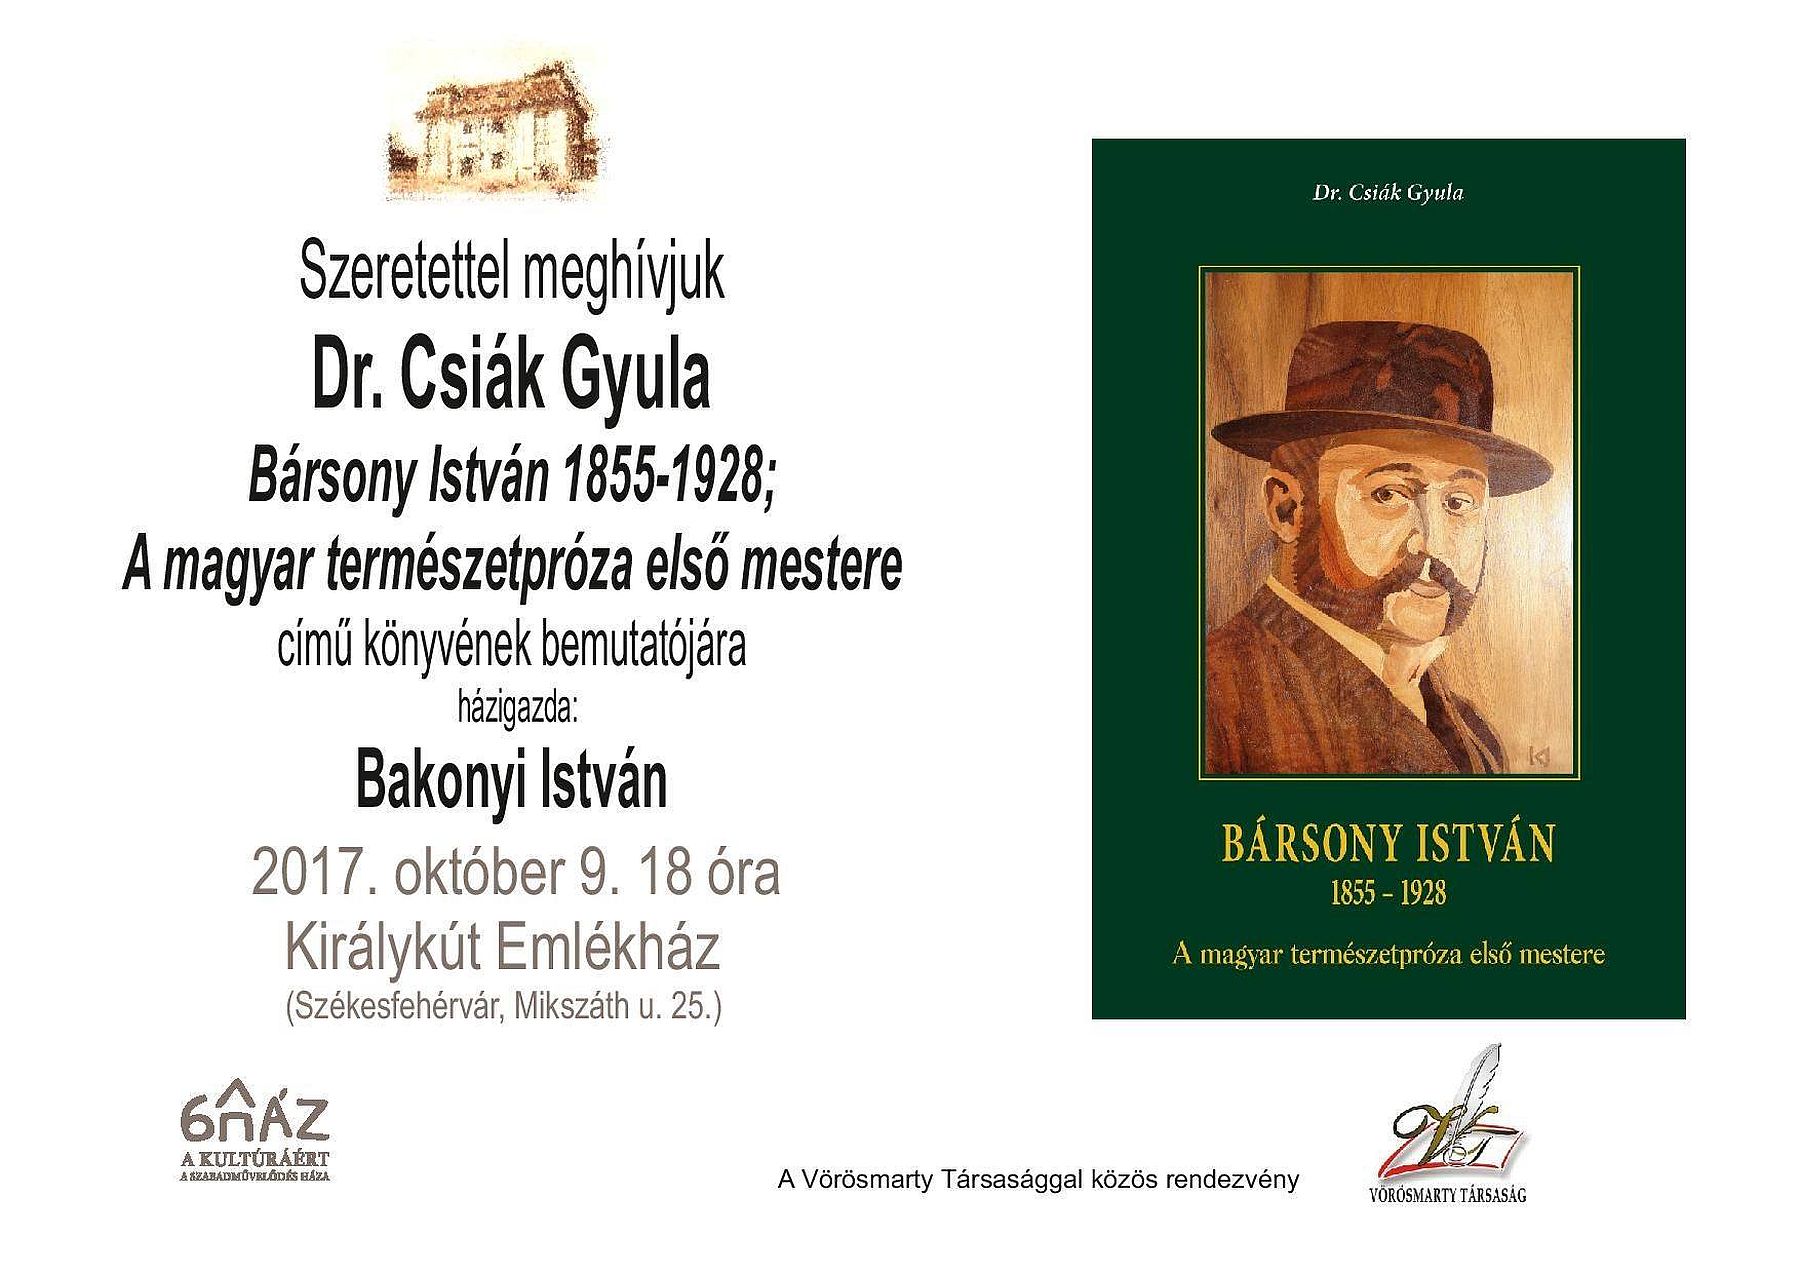 A magyar természetpróza első mestere - könyvbemutató a Királykút Emlékházban